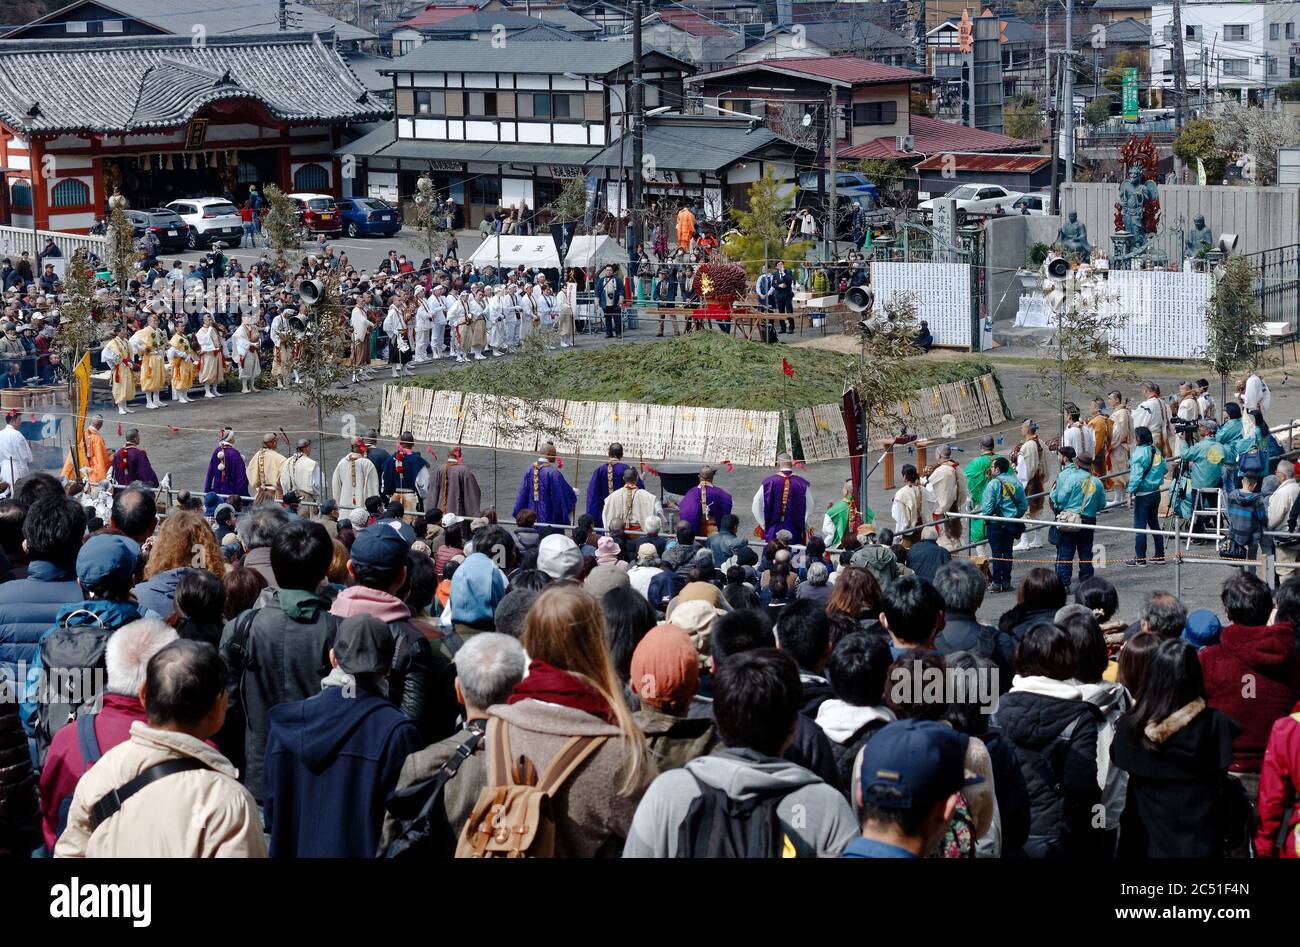 Eine große Menge und eine Reihe von Mönchen versammelten sich um einen Haufen Grünes, die beim jährlichen Feuer-Wanderfest in der Nähe des Berges Takao anzünden Stockfoto